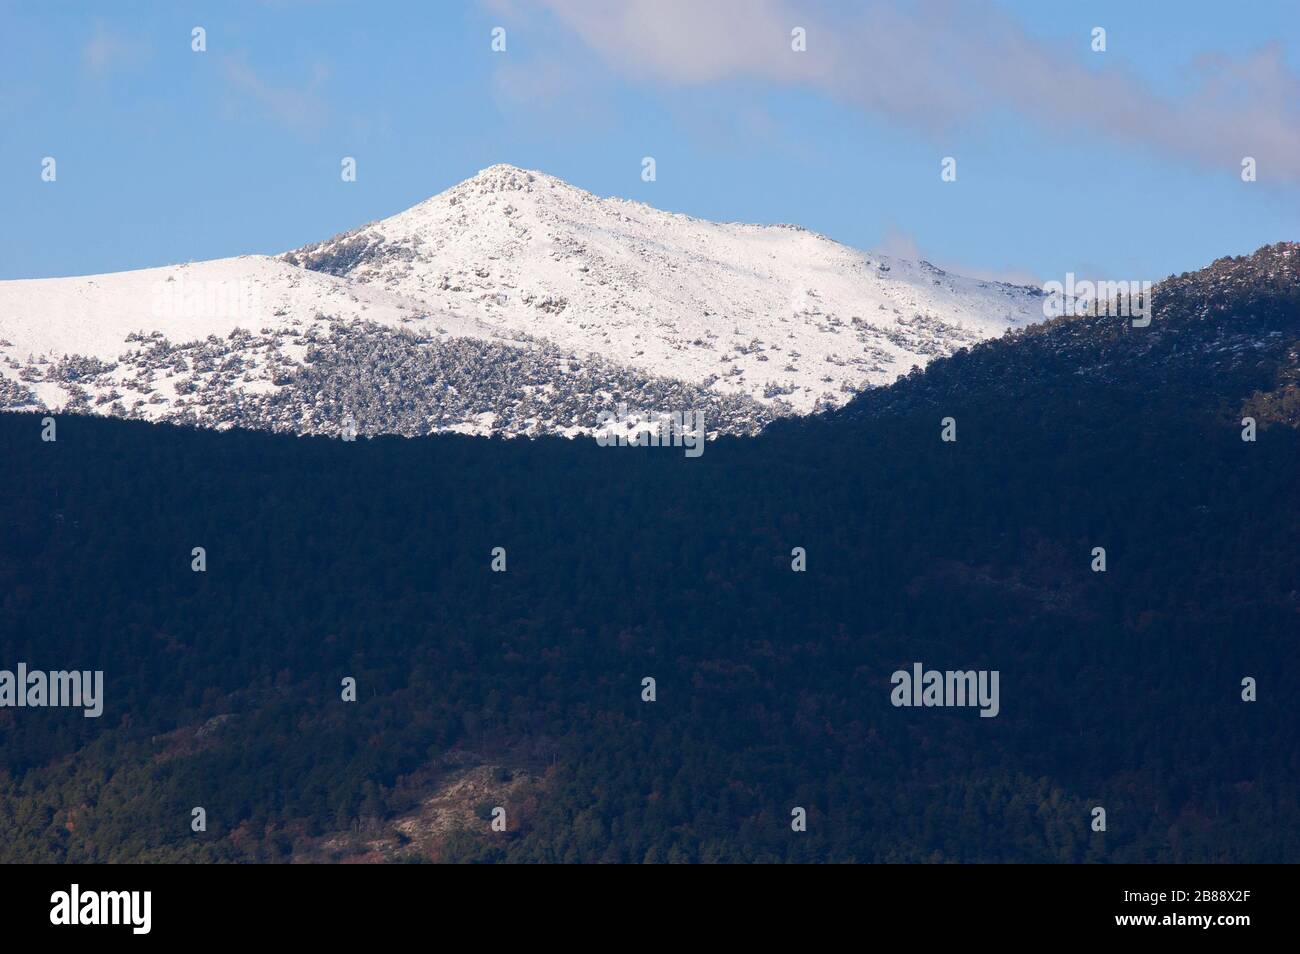 Montón de trigo snow-clad mountain in Cercedilla, Guadarrama National Park Stock Photo